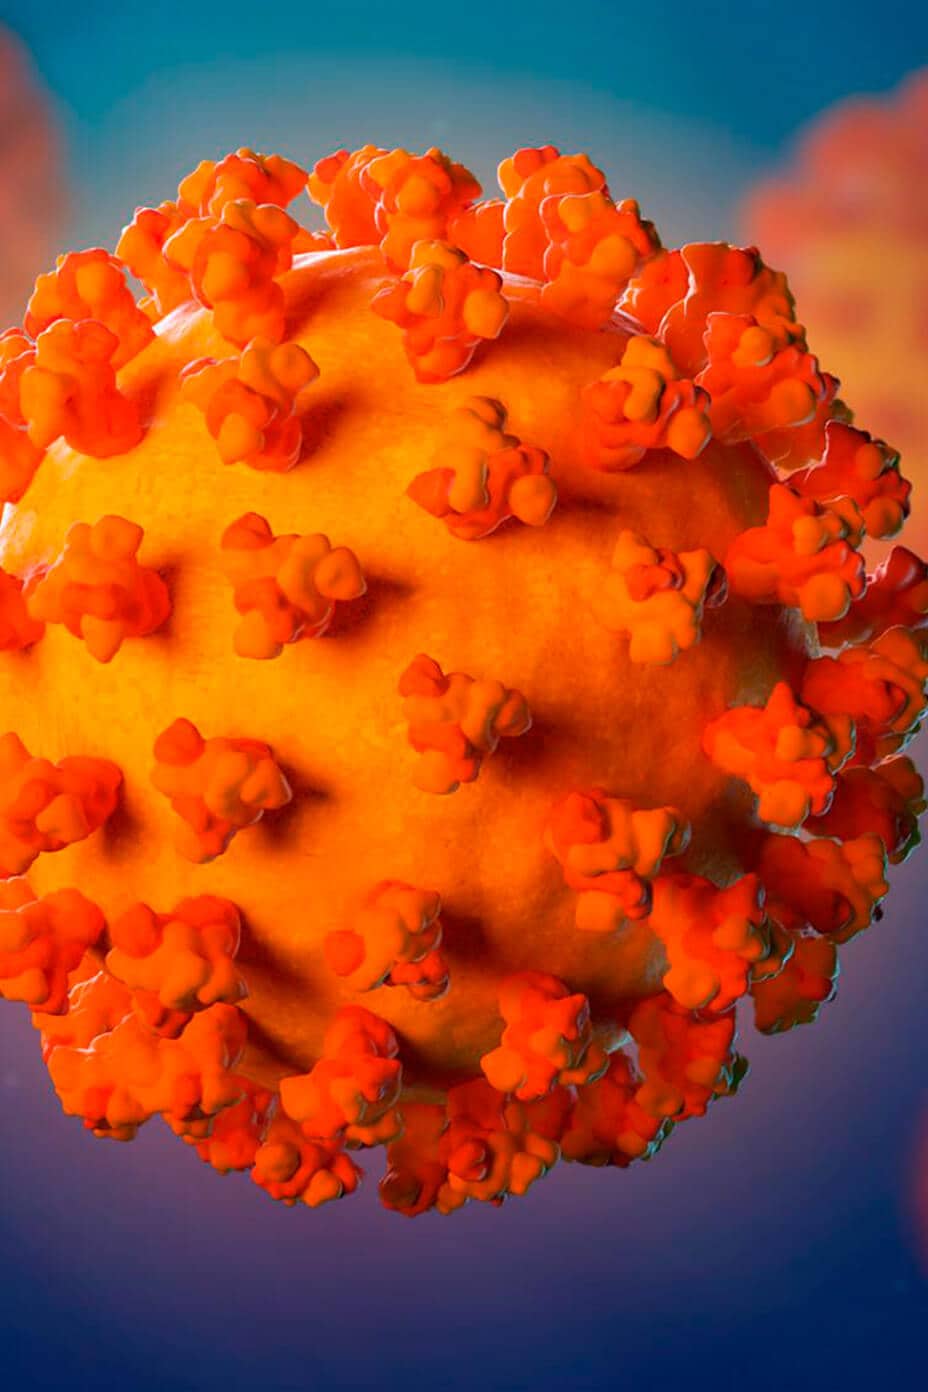 فيروس المتلازمة التنفسية الحادة الوخيمة كورونا 2 (SARS-CoV-2)، الفيروس المسبب لكوفيد-19